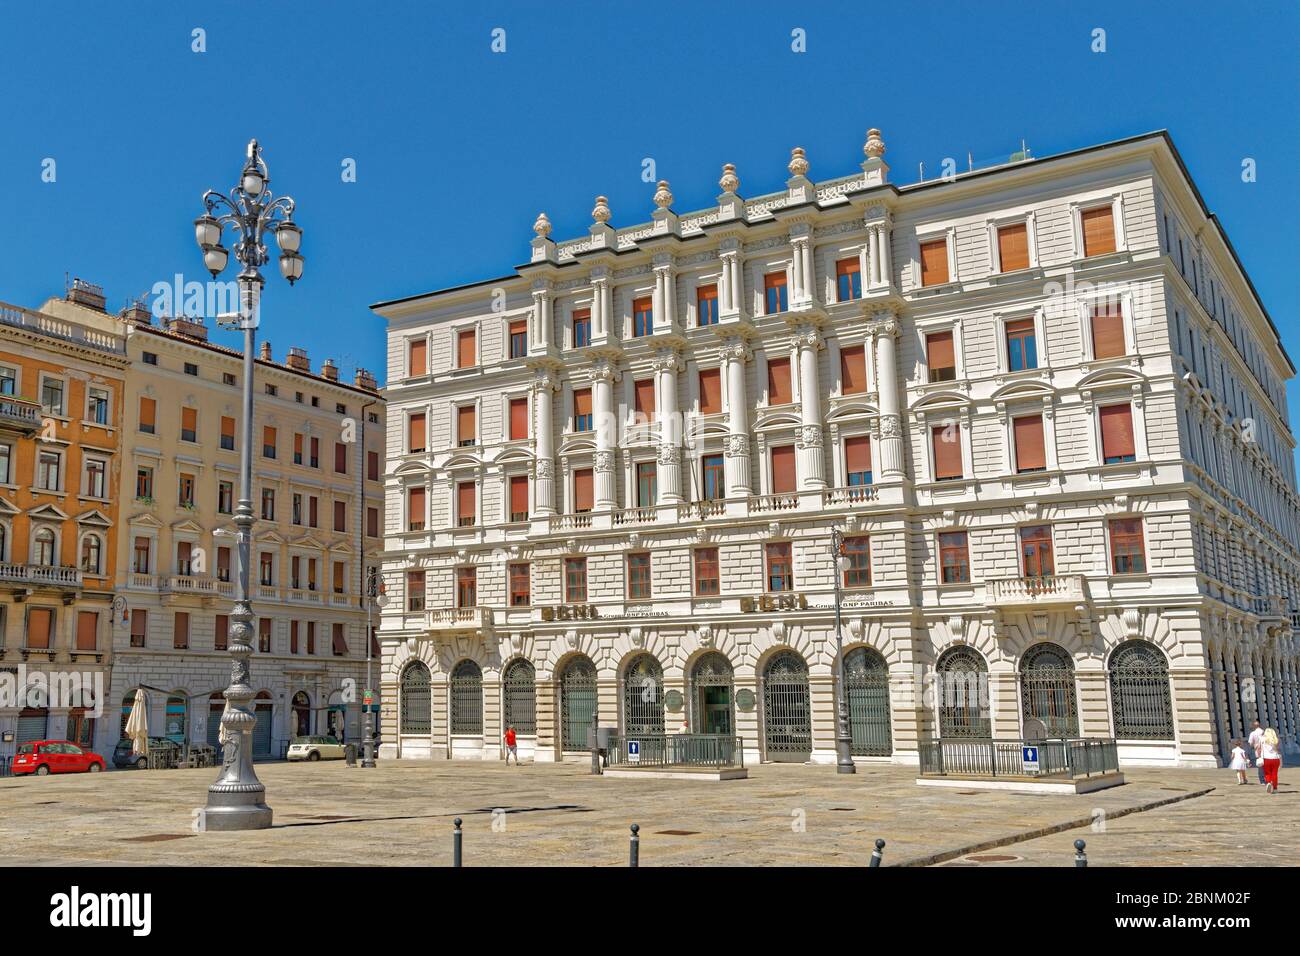 Edificio BNL Gruppo BNP Paribas, Trieste, Italia. Foto de stock